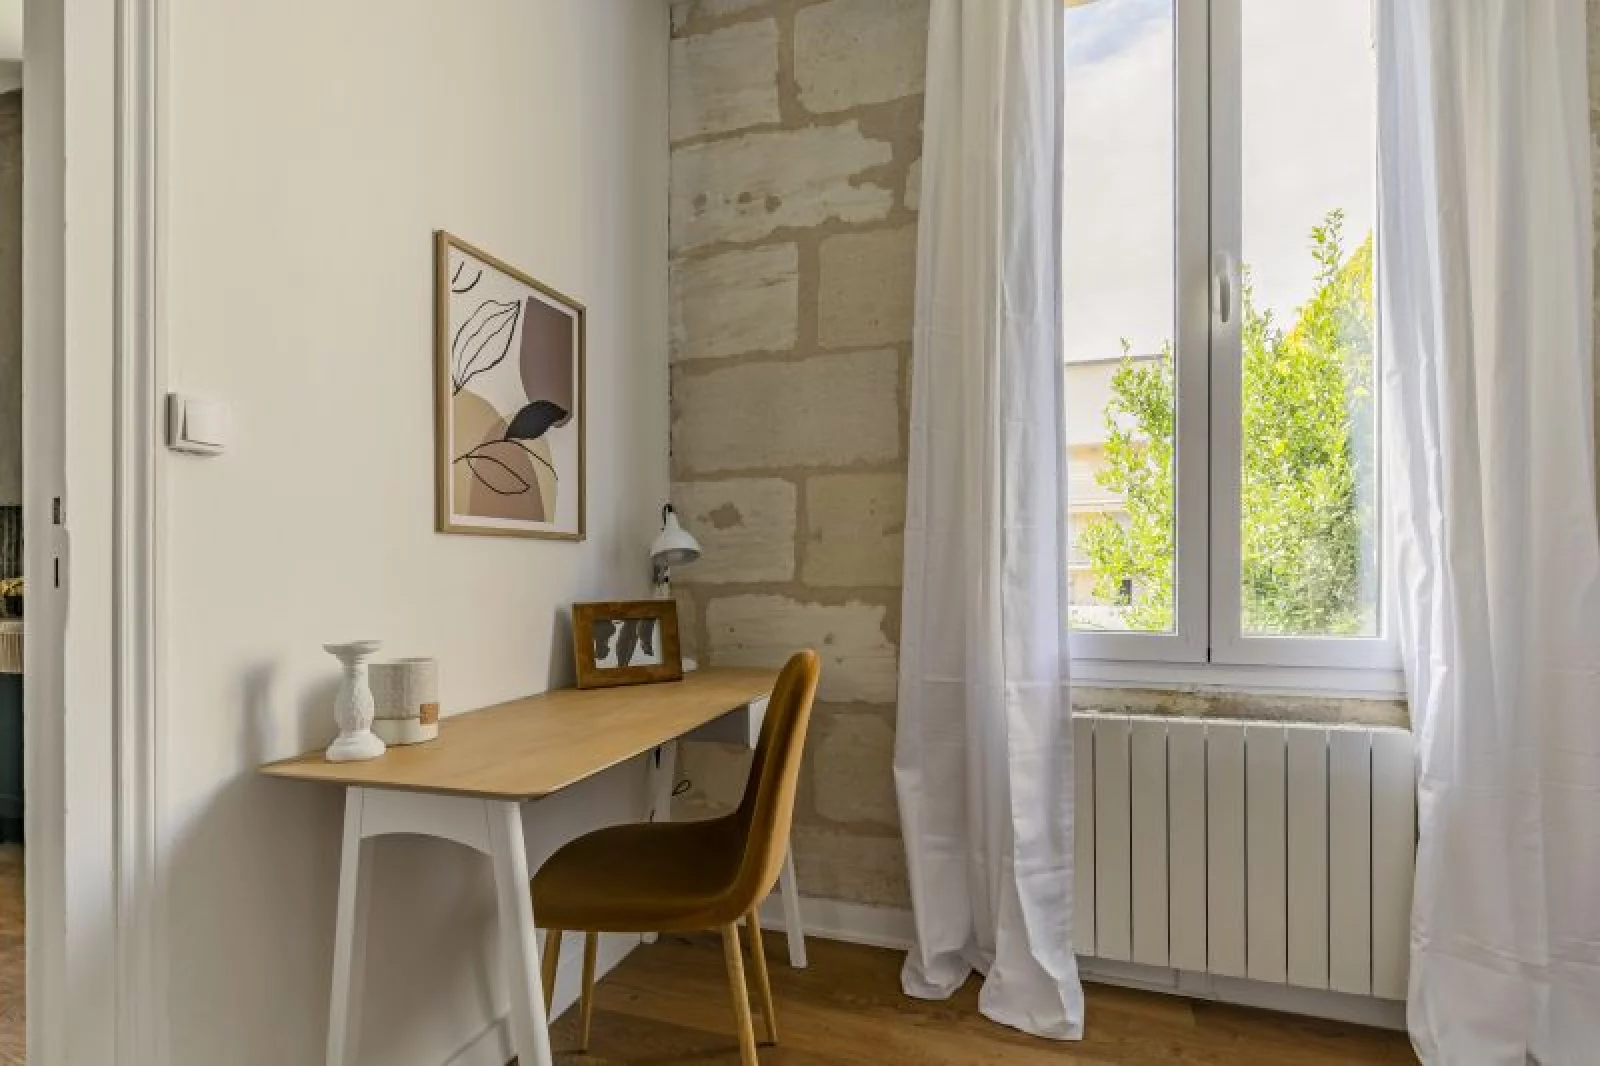 Location appartement meublé 2 pièces 50m² (Bordeaux - Mériadeck)